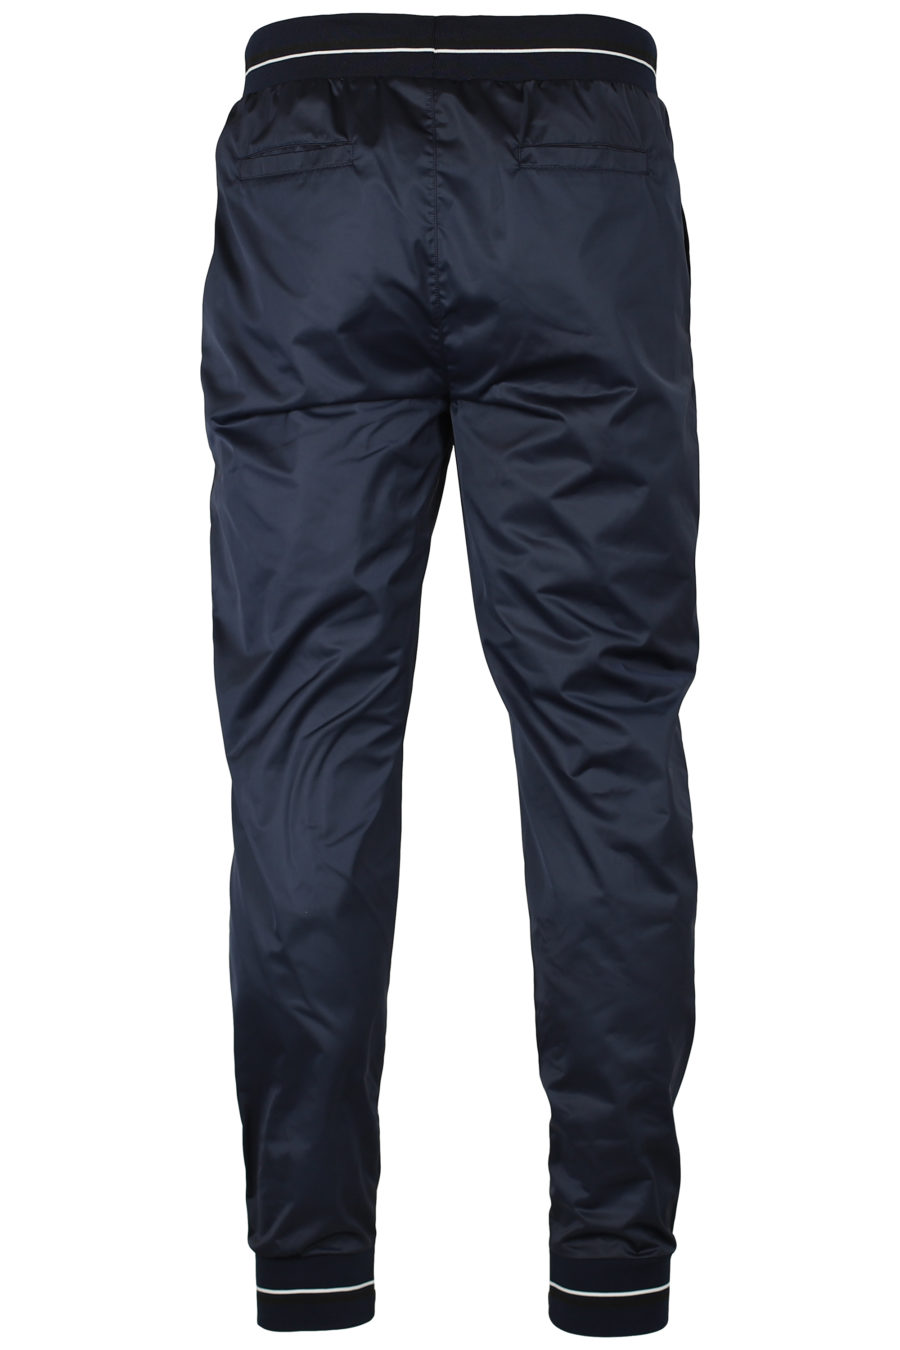 Pantalón jogger azul con cremallera - IMG 2605